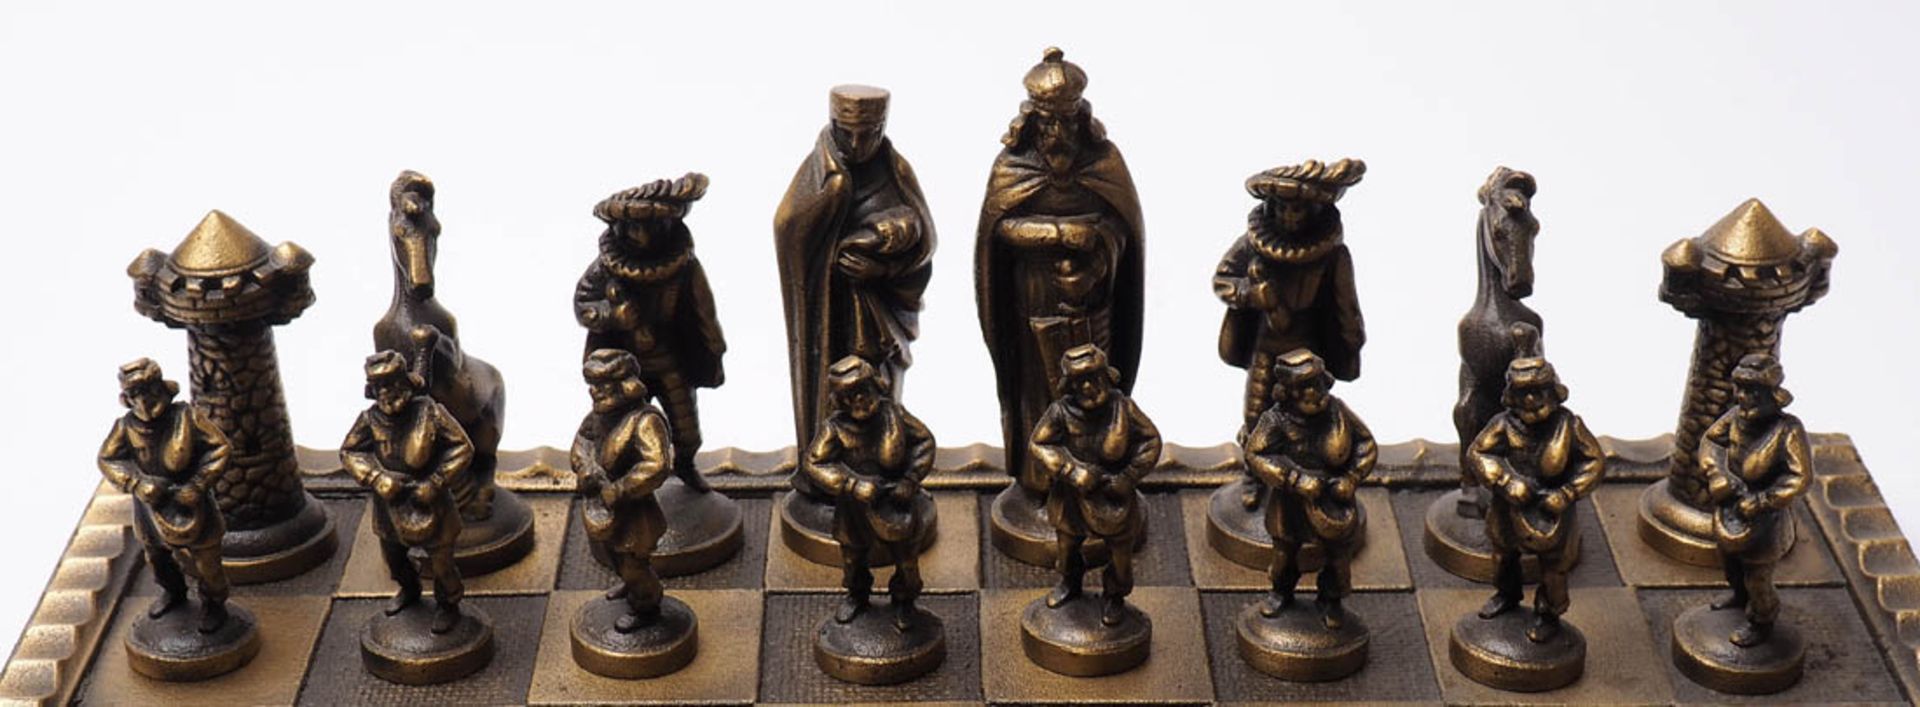 Schachspiel Figuren in Form von mittelalterlichen Gestalten. Messingguss. Brettmaß 34x34cm, Höhe des - Bild 2 aus 2